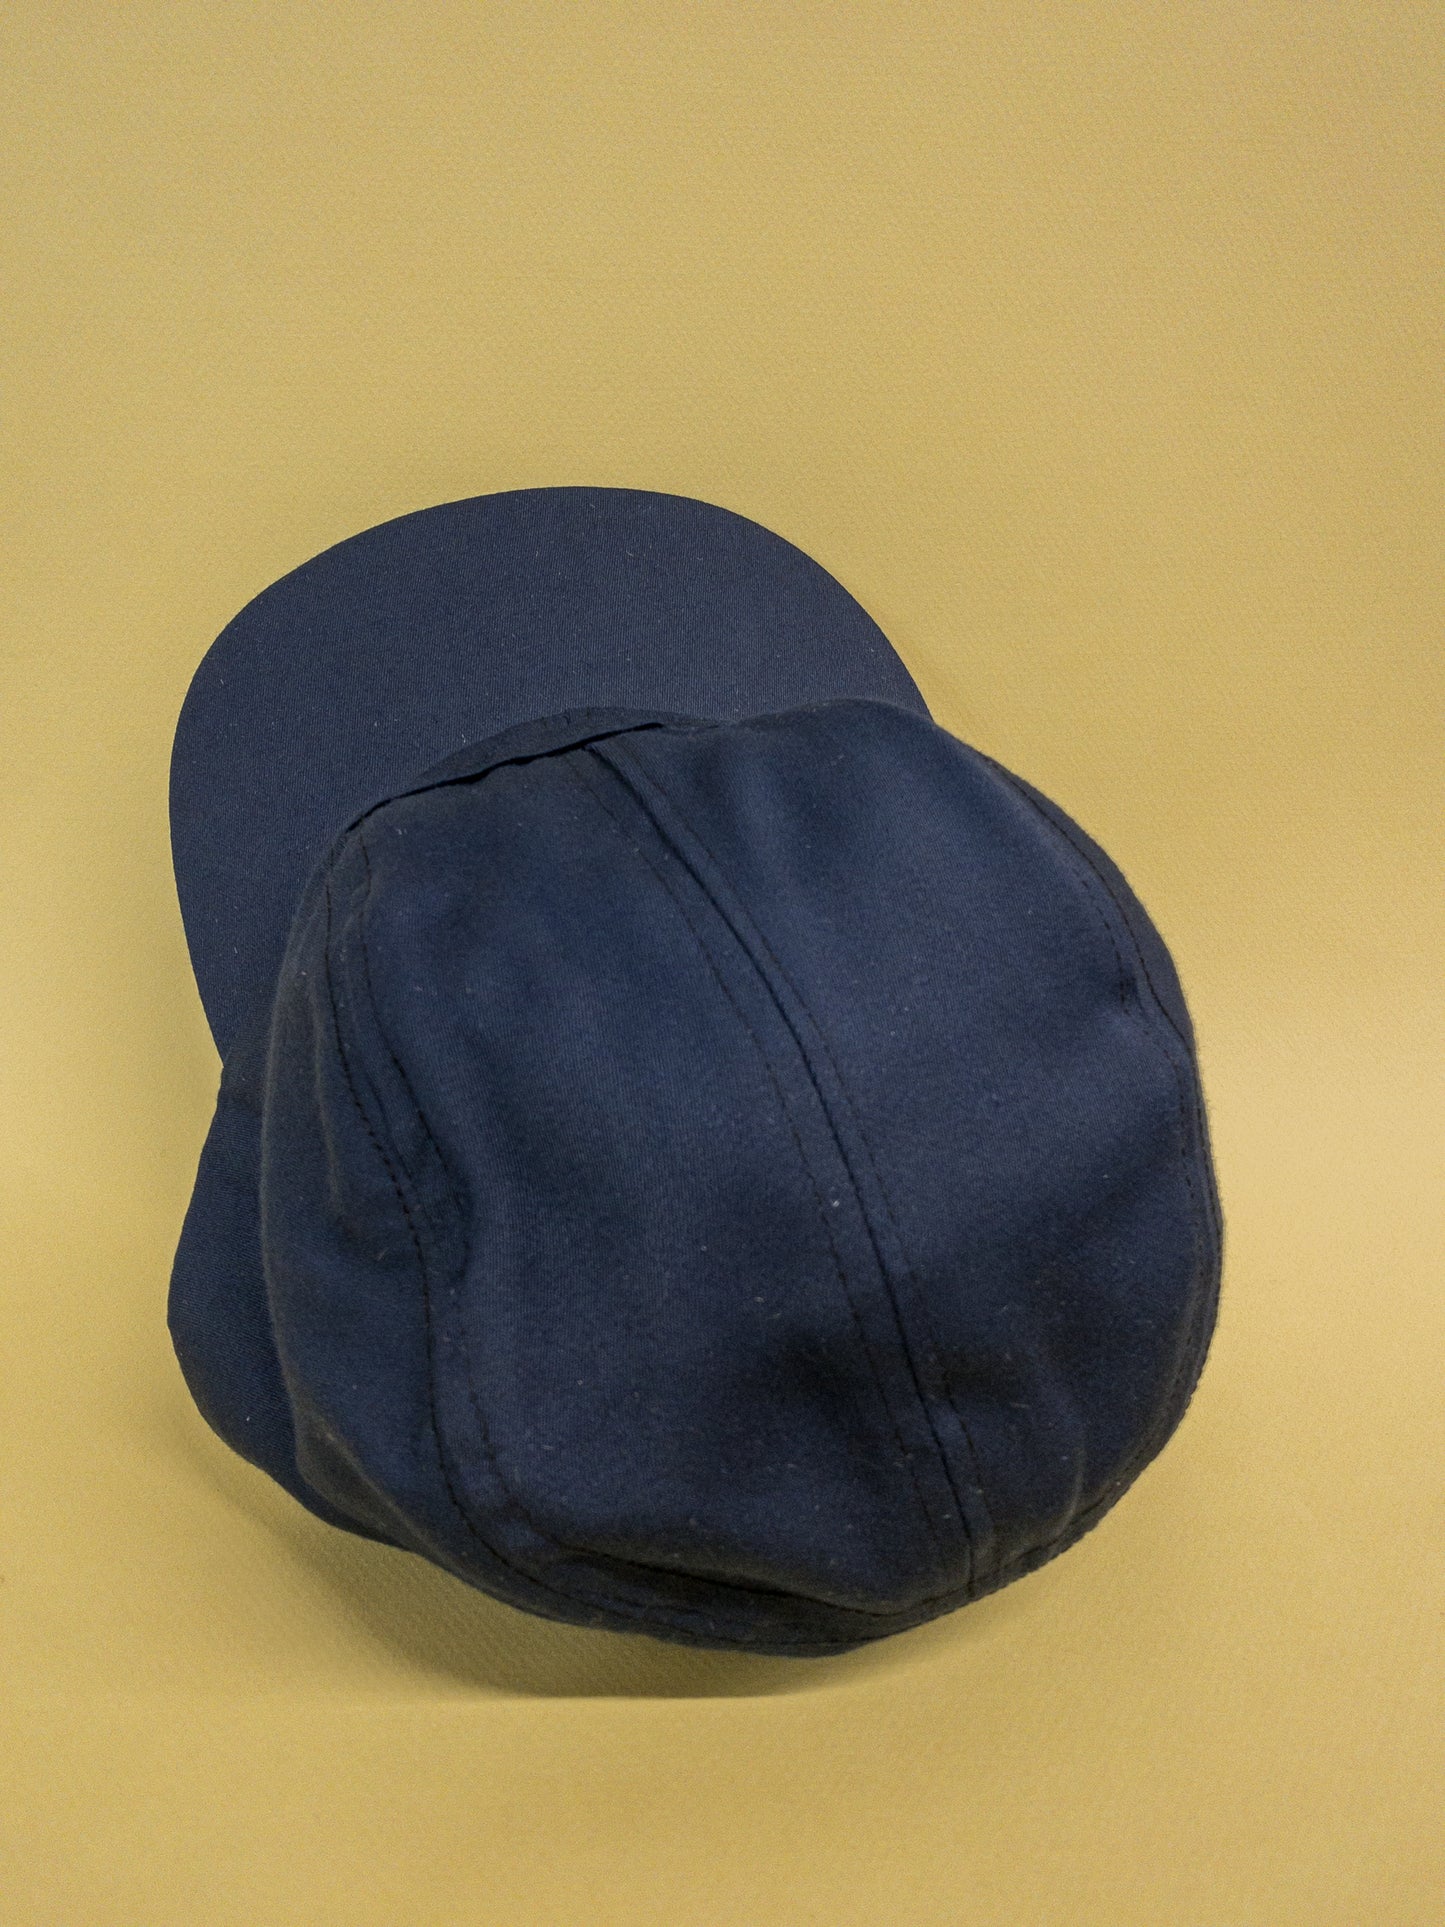 50's 60's Mrs. Maisel Navy Blue Baseball Cadet Hat